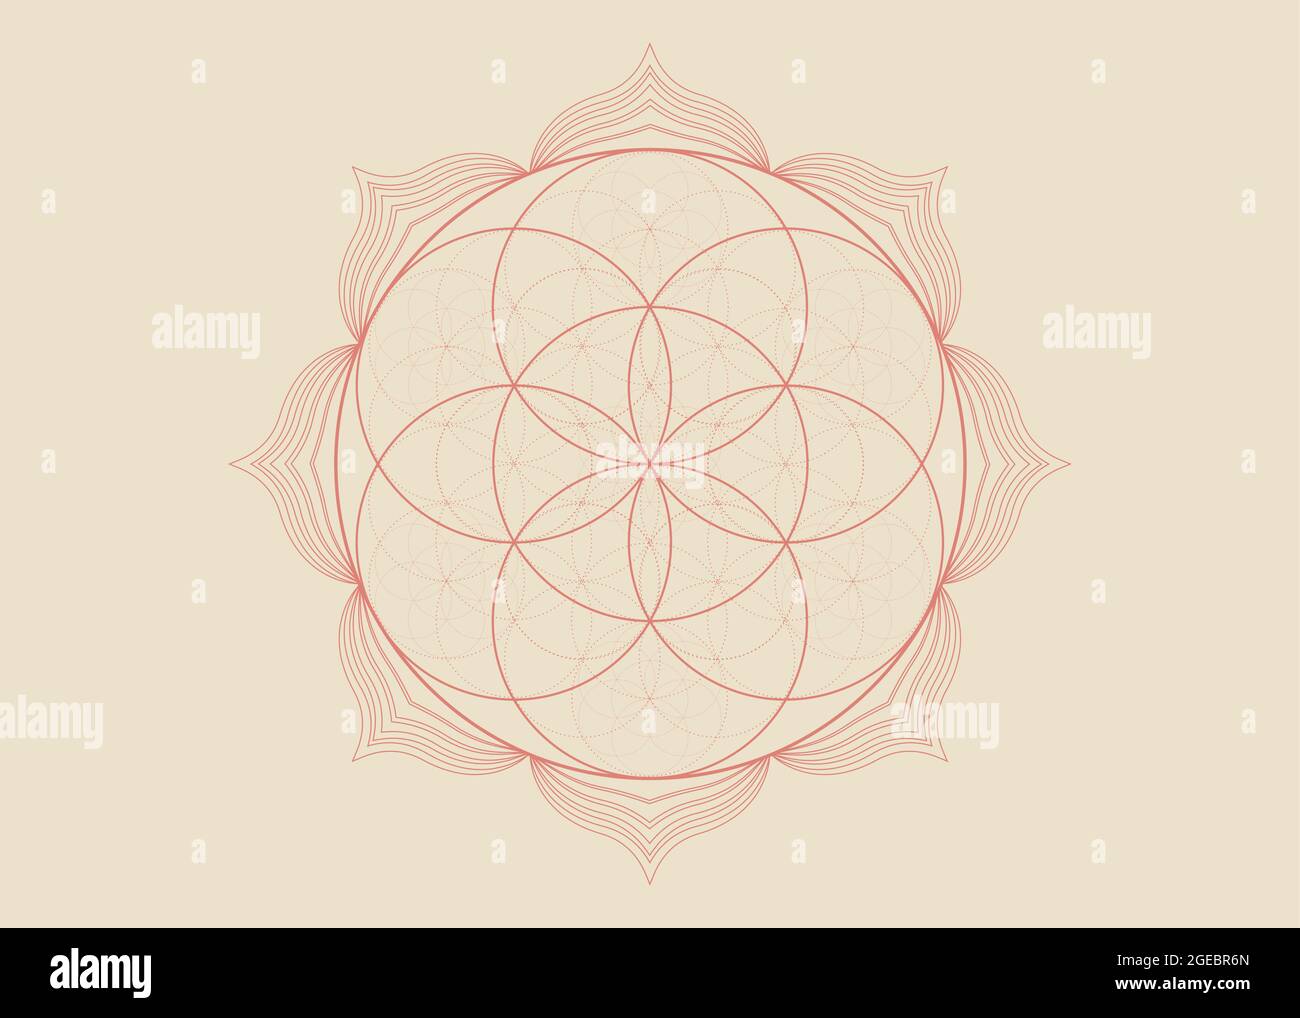 Seed Blume des Lebens Lotus-Symbol, yantra Mandala heilige Geometrie, Tattoo Symbol der Harmonie und Balance. Mystischer Talisman, Henna-Farblinien-Vektor Stock Vektor